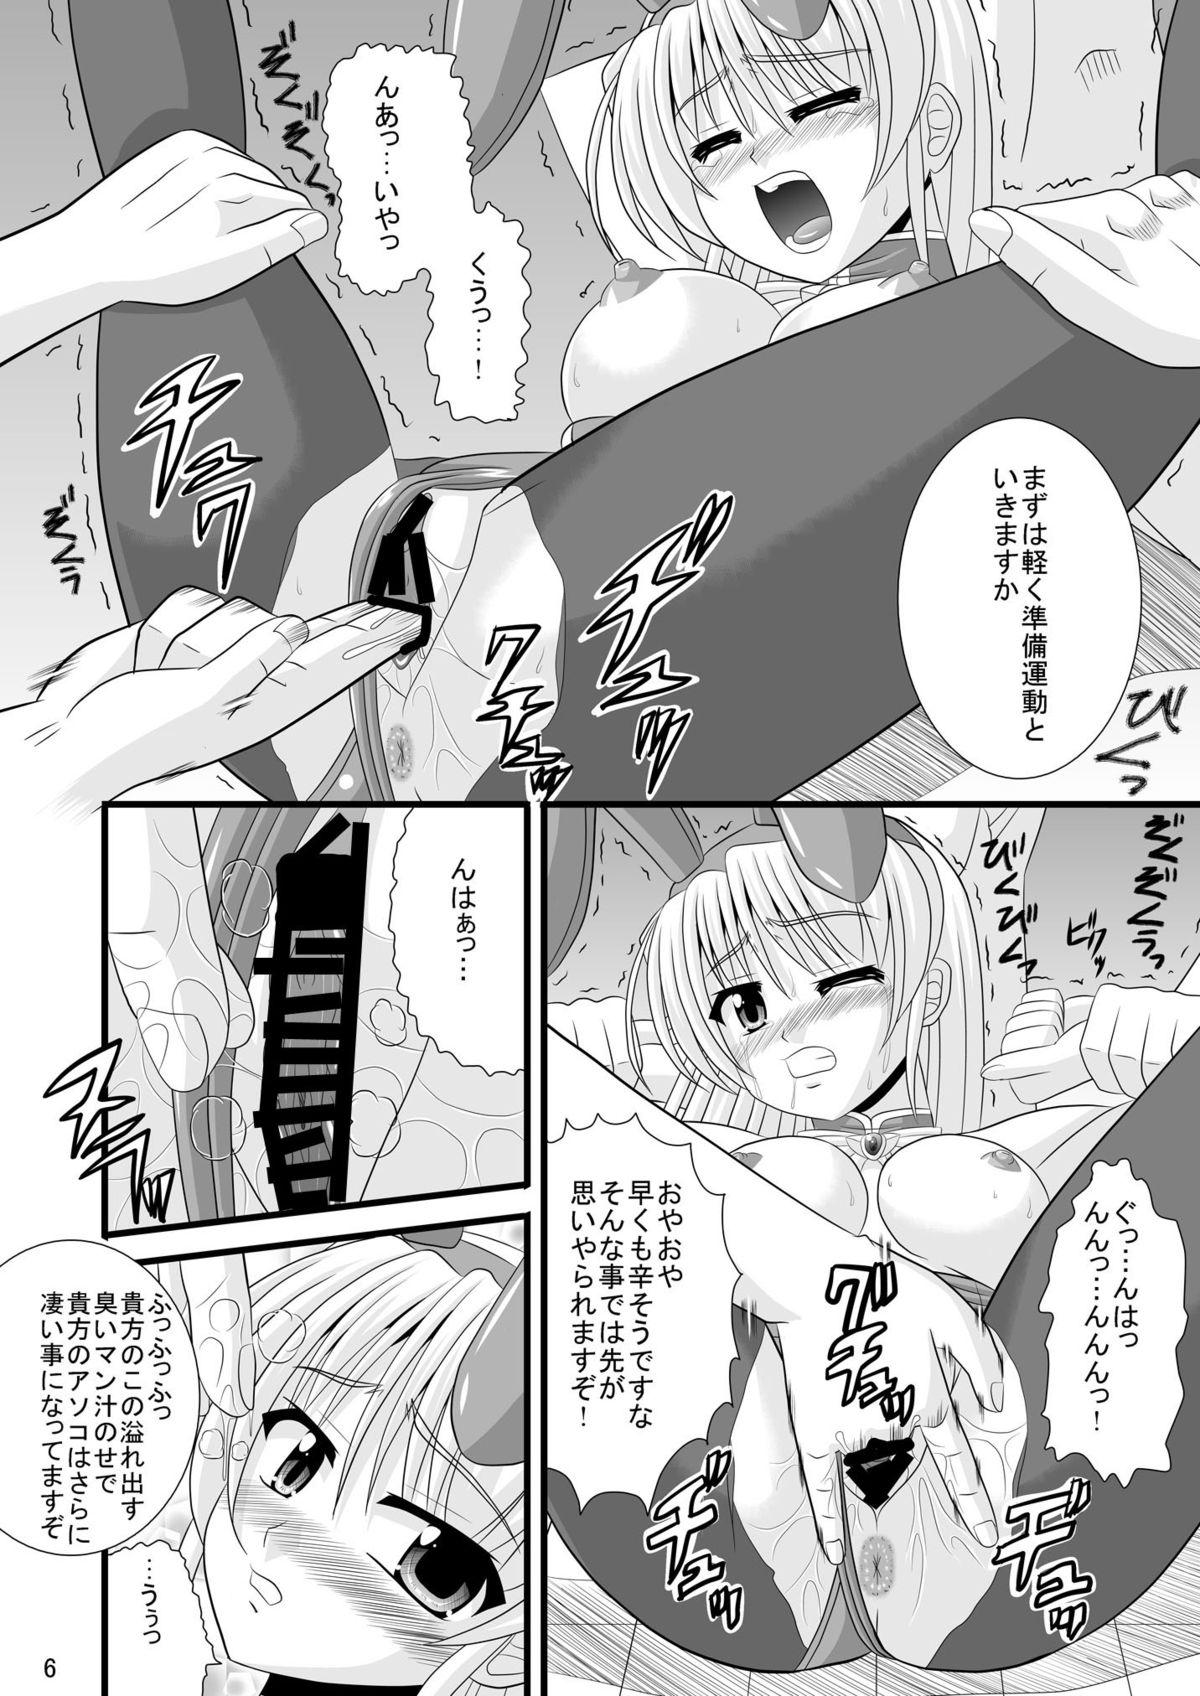 Caseiro Hime-sama no Himitsu Settai - Yoake mae yori ruriiro na Hardcore Porn - Page 6